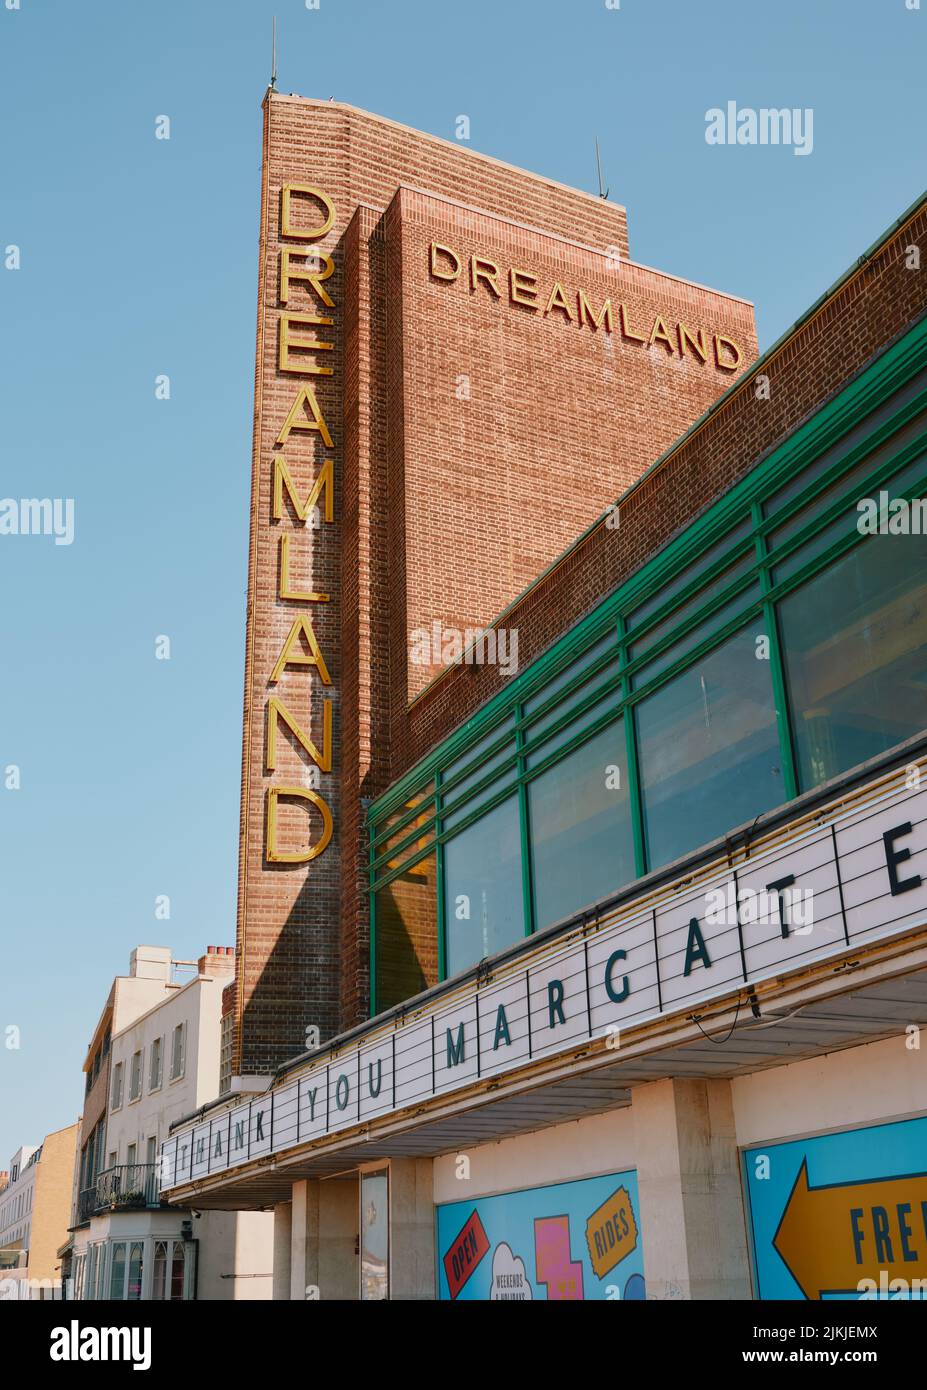 L'emblématique façade d'entrée en bord de mer art déco du parc d'attractions Dreamland à Margate Kent Angleterre Royaume-Uni - panneau de conception d'architecture de bord de mer Banque D'Images